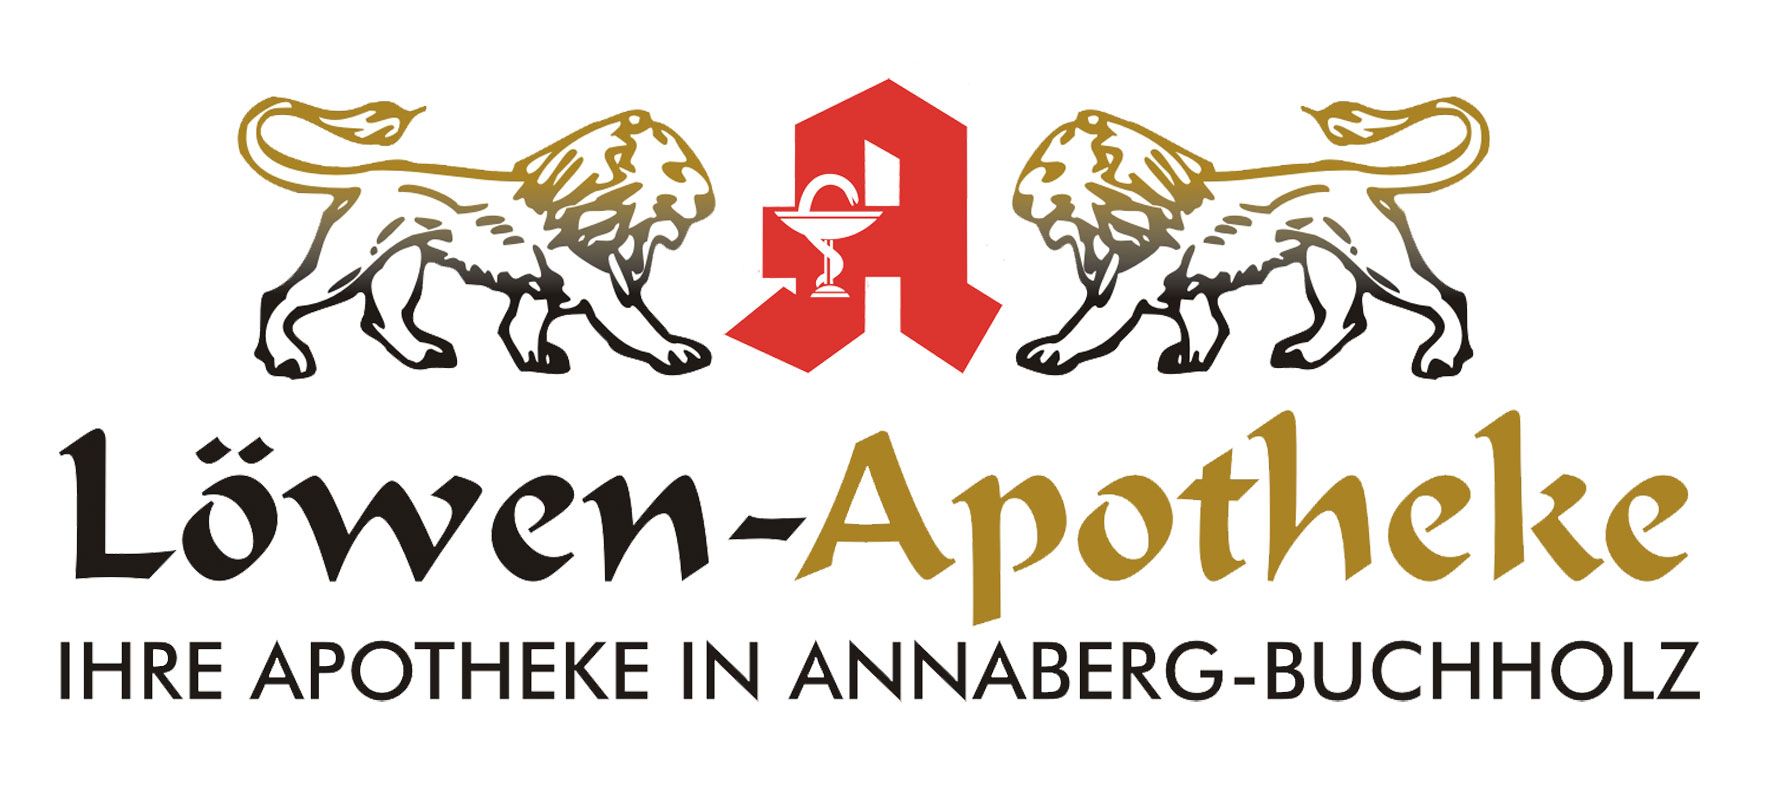 (c) Loewen-apotheke-annaberg.de